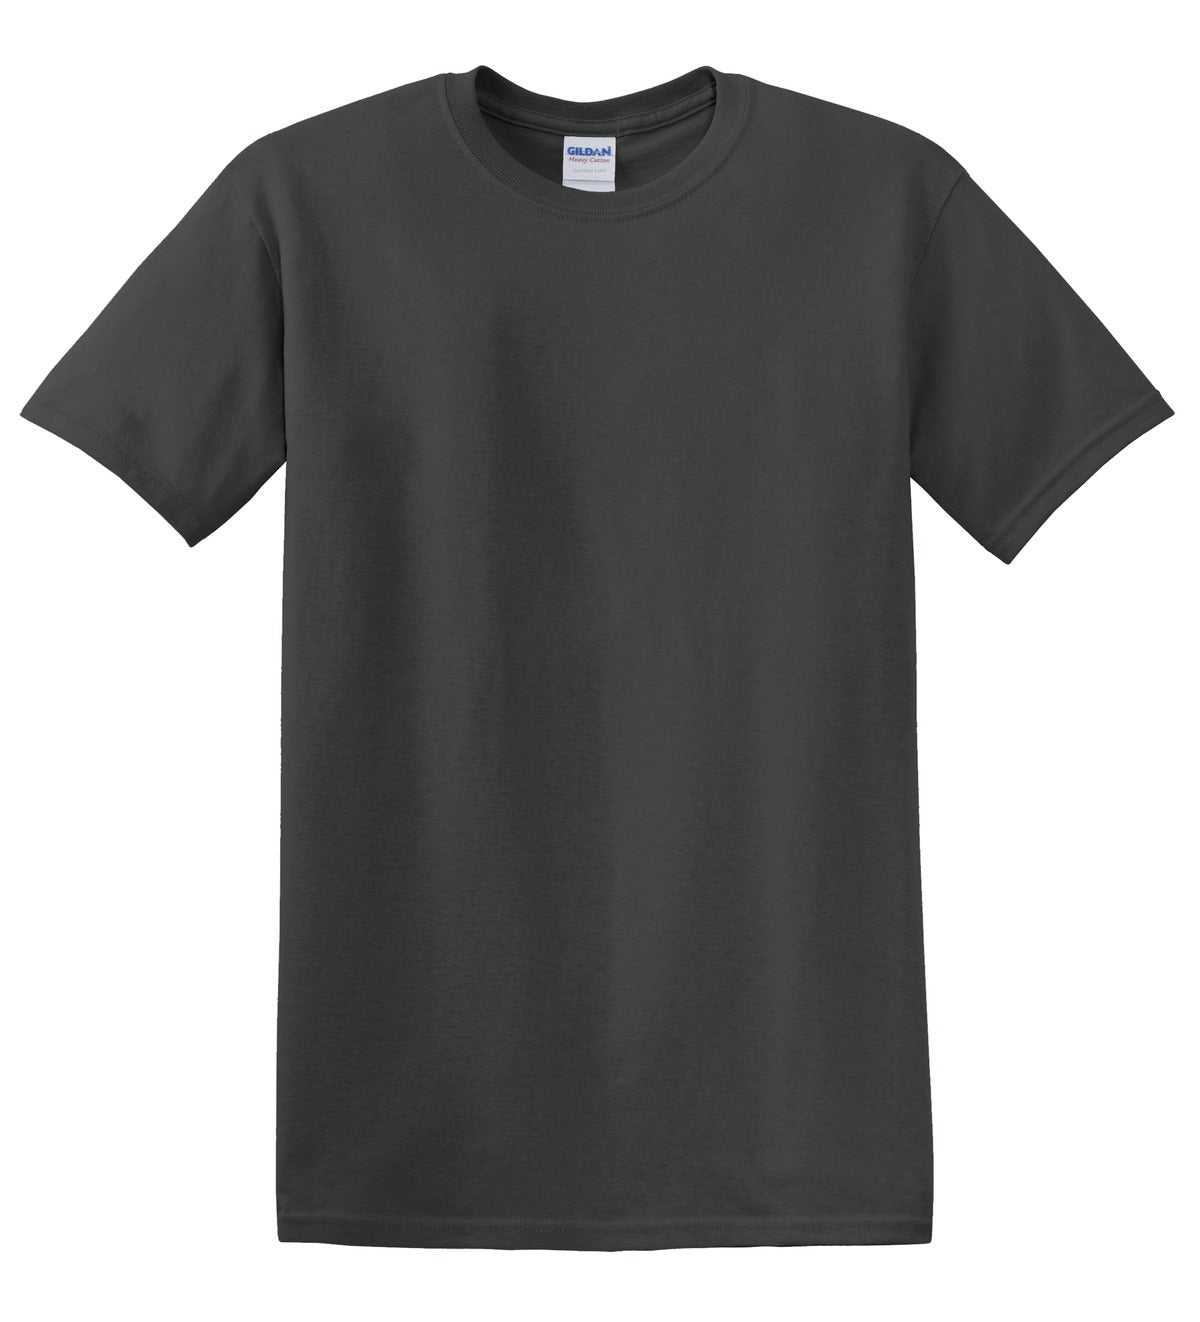 Gildan 5000 Heavy Cotton 100% Cotton T-Shirt - Charcoal - HIT a Double